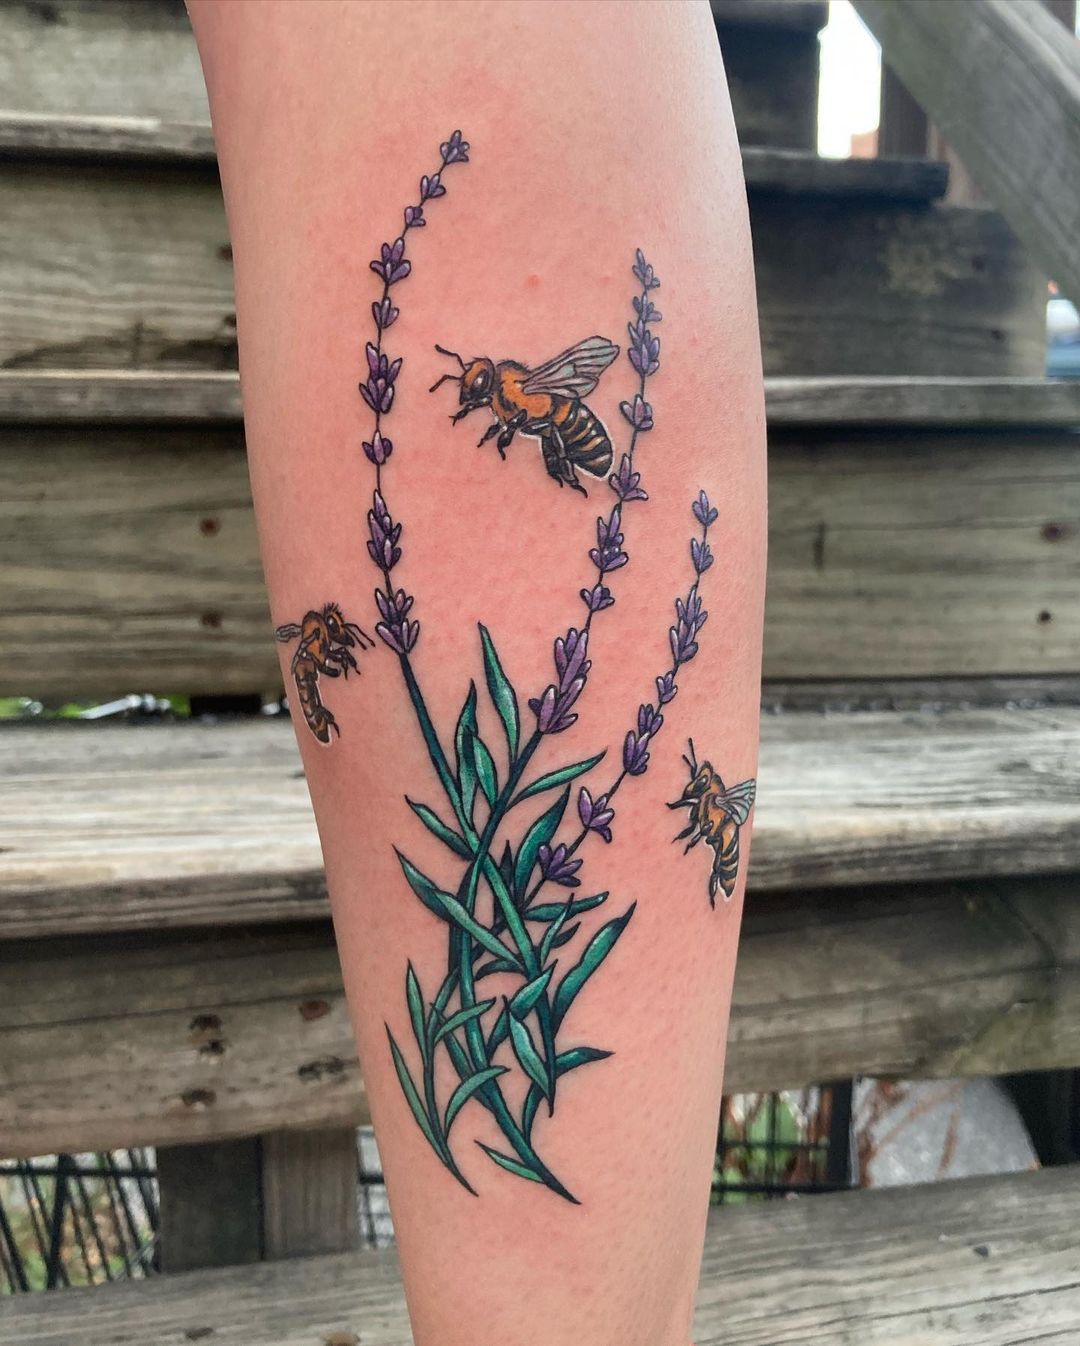 Multiple bees tattoo